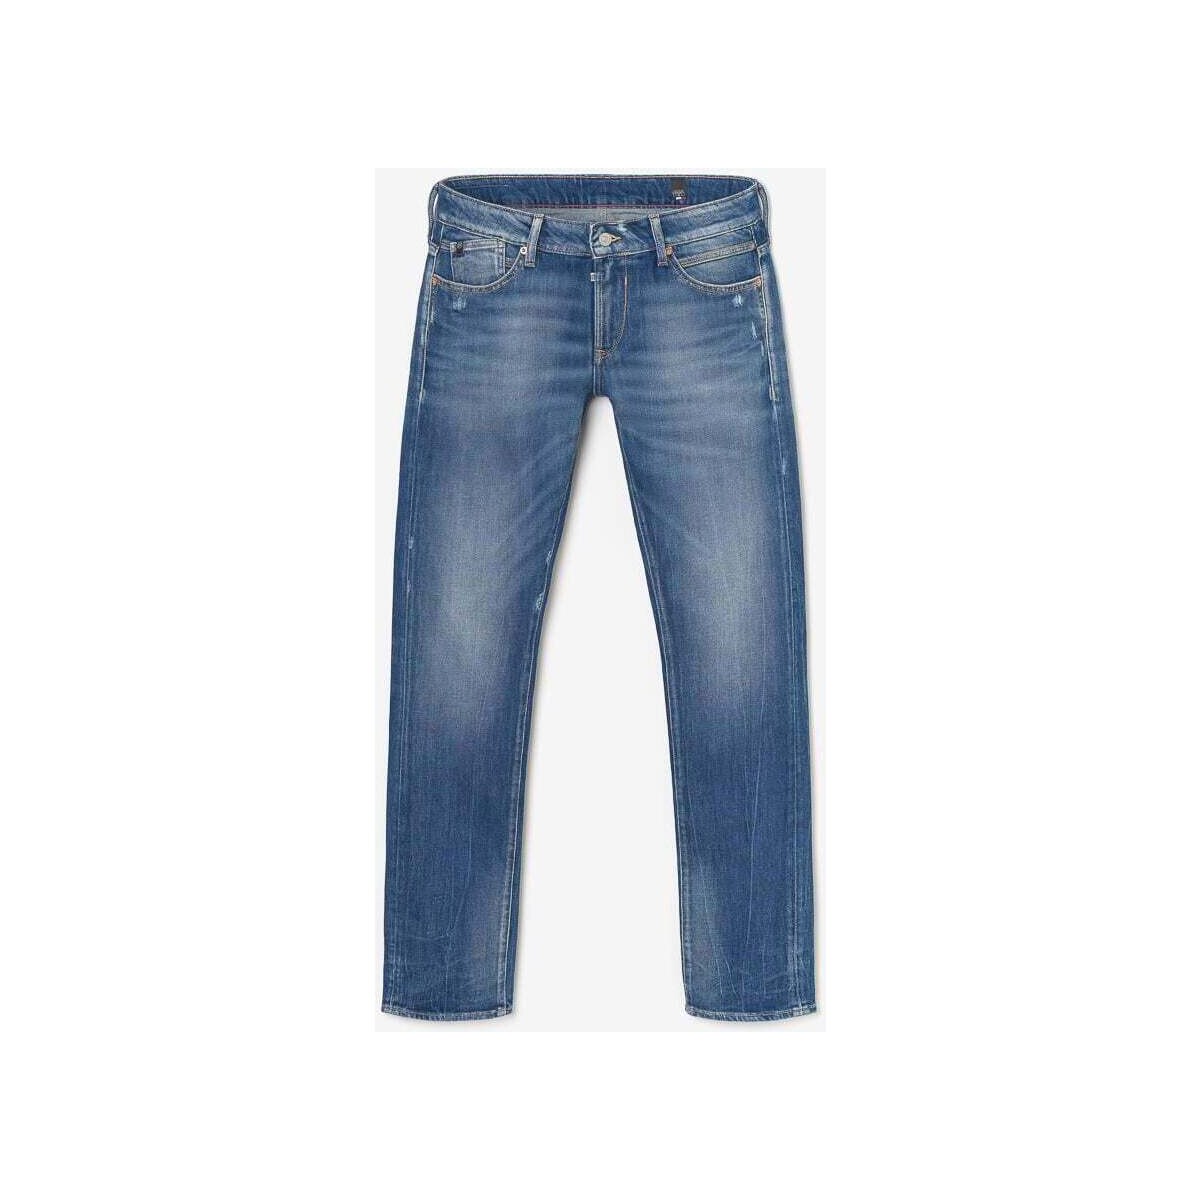 Le Temps des Cerises Bleu Pazy 800/12 regular jeans des